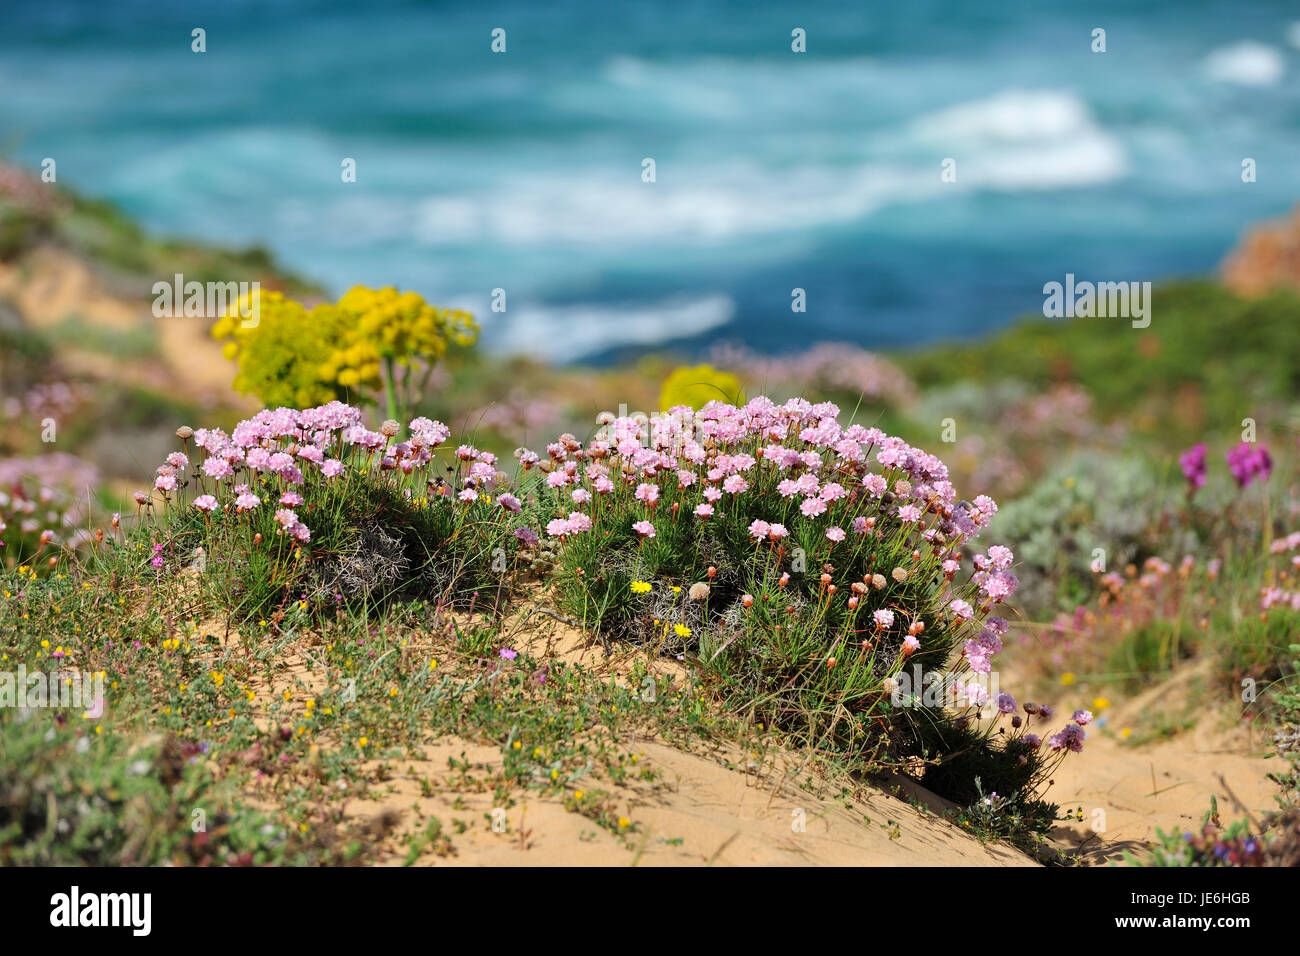 Armeria pungens Blossom. Bordeira, Algarve. Du Sud-Ouest Alentejano et Costa Vicentina Nature Park, la plus sauvage de la côte atlantique en Europe. Portugal Banque D'Images